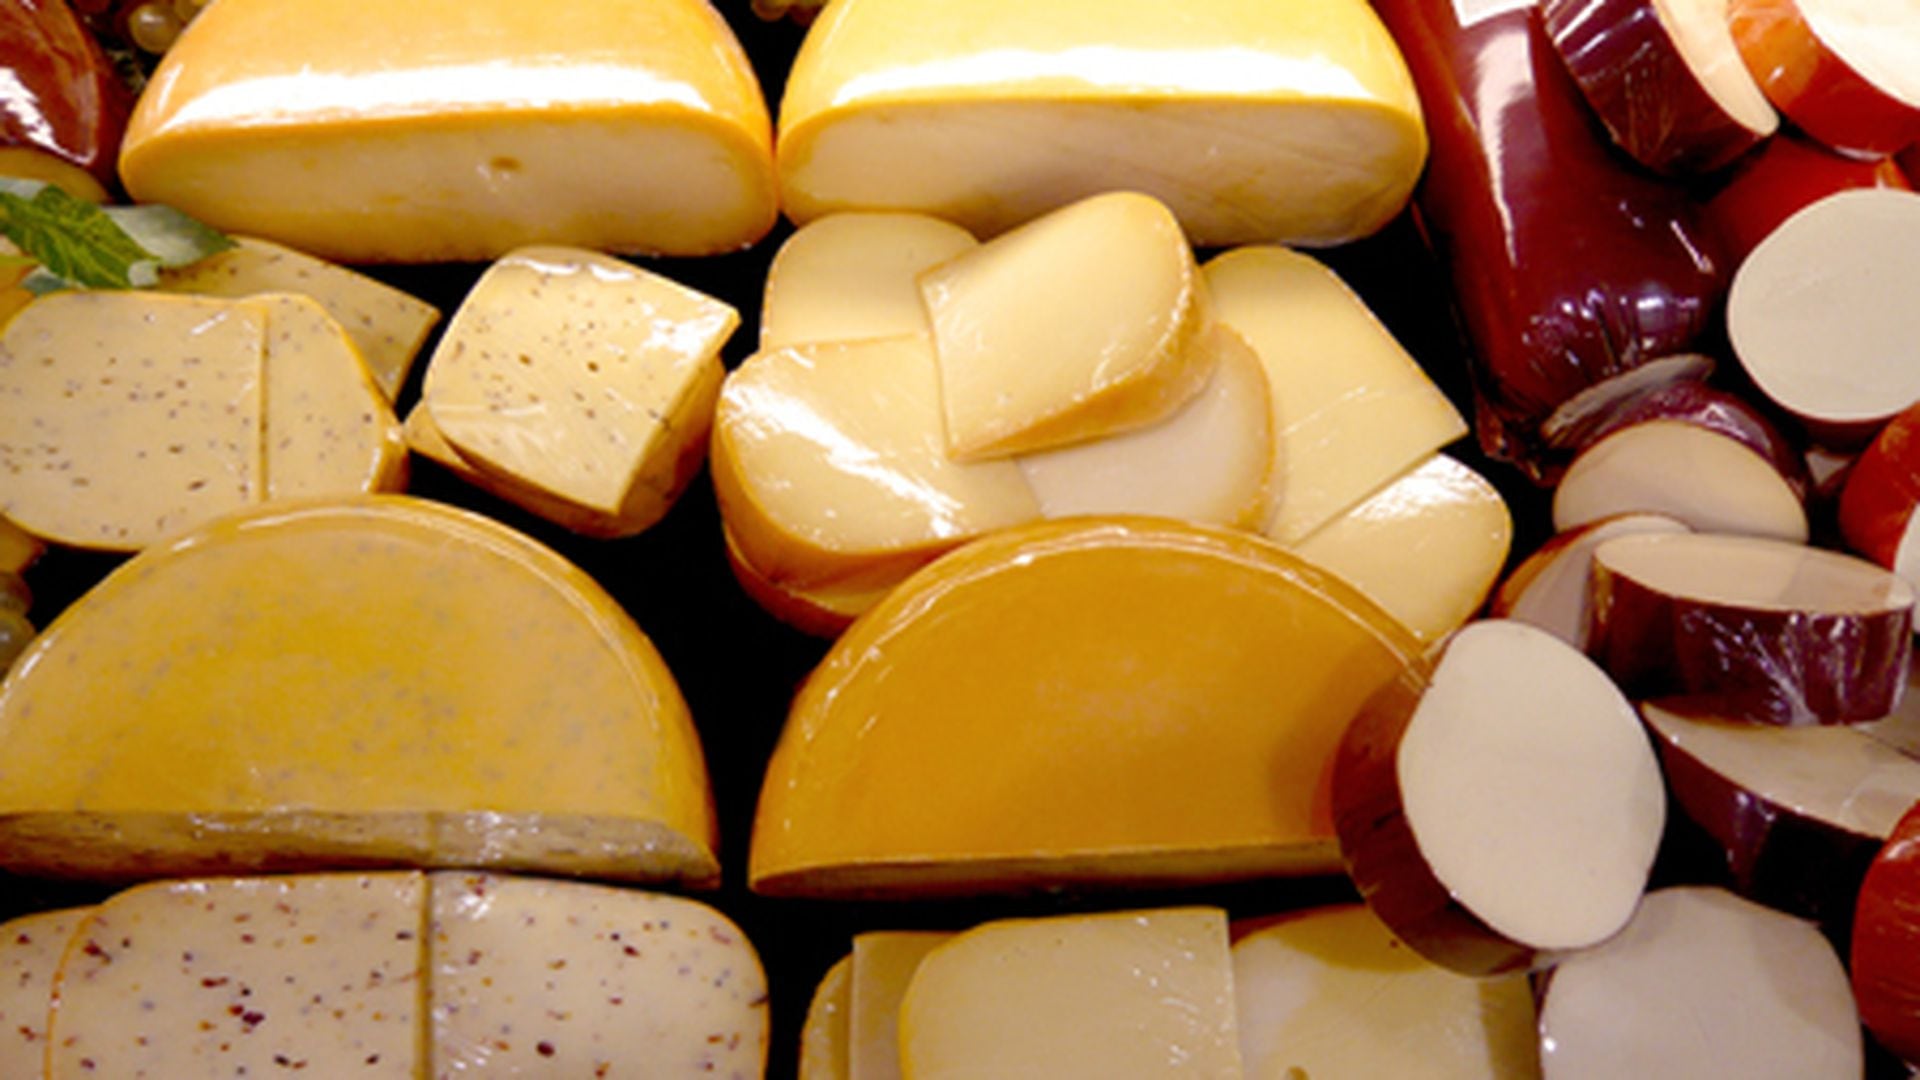 La mejor forma de conservar el queso, abierto o sin abrir - EN LA COCINA  Magazine